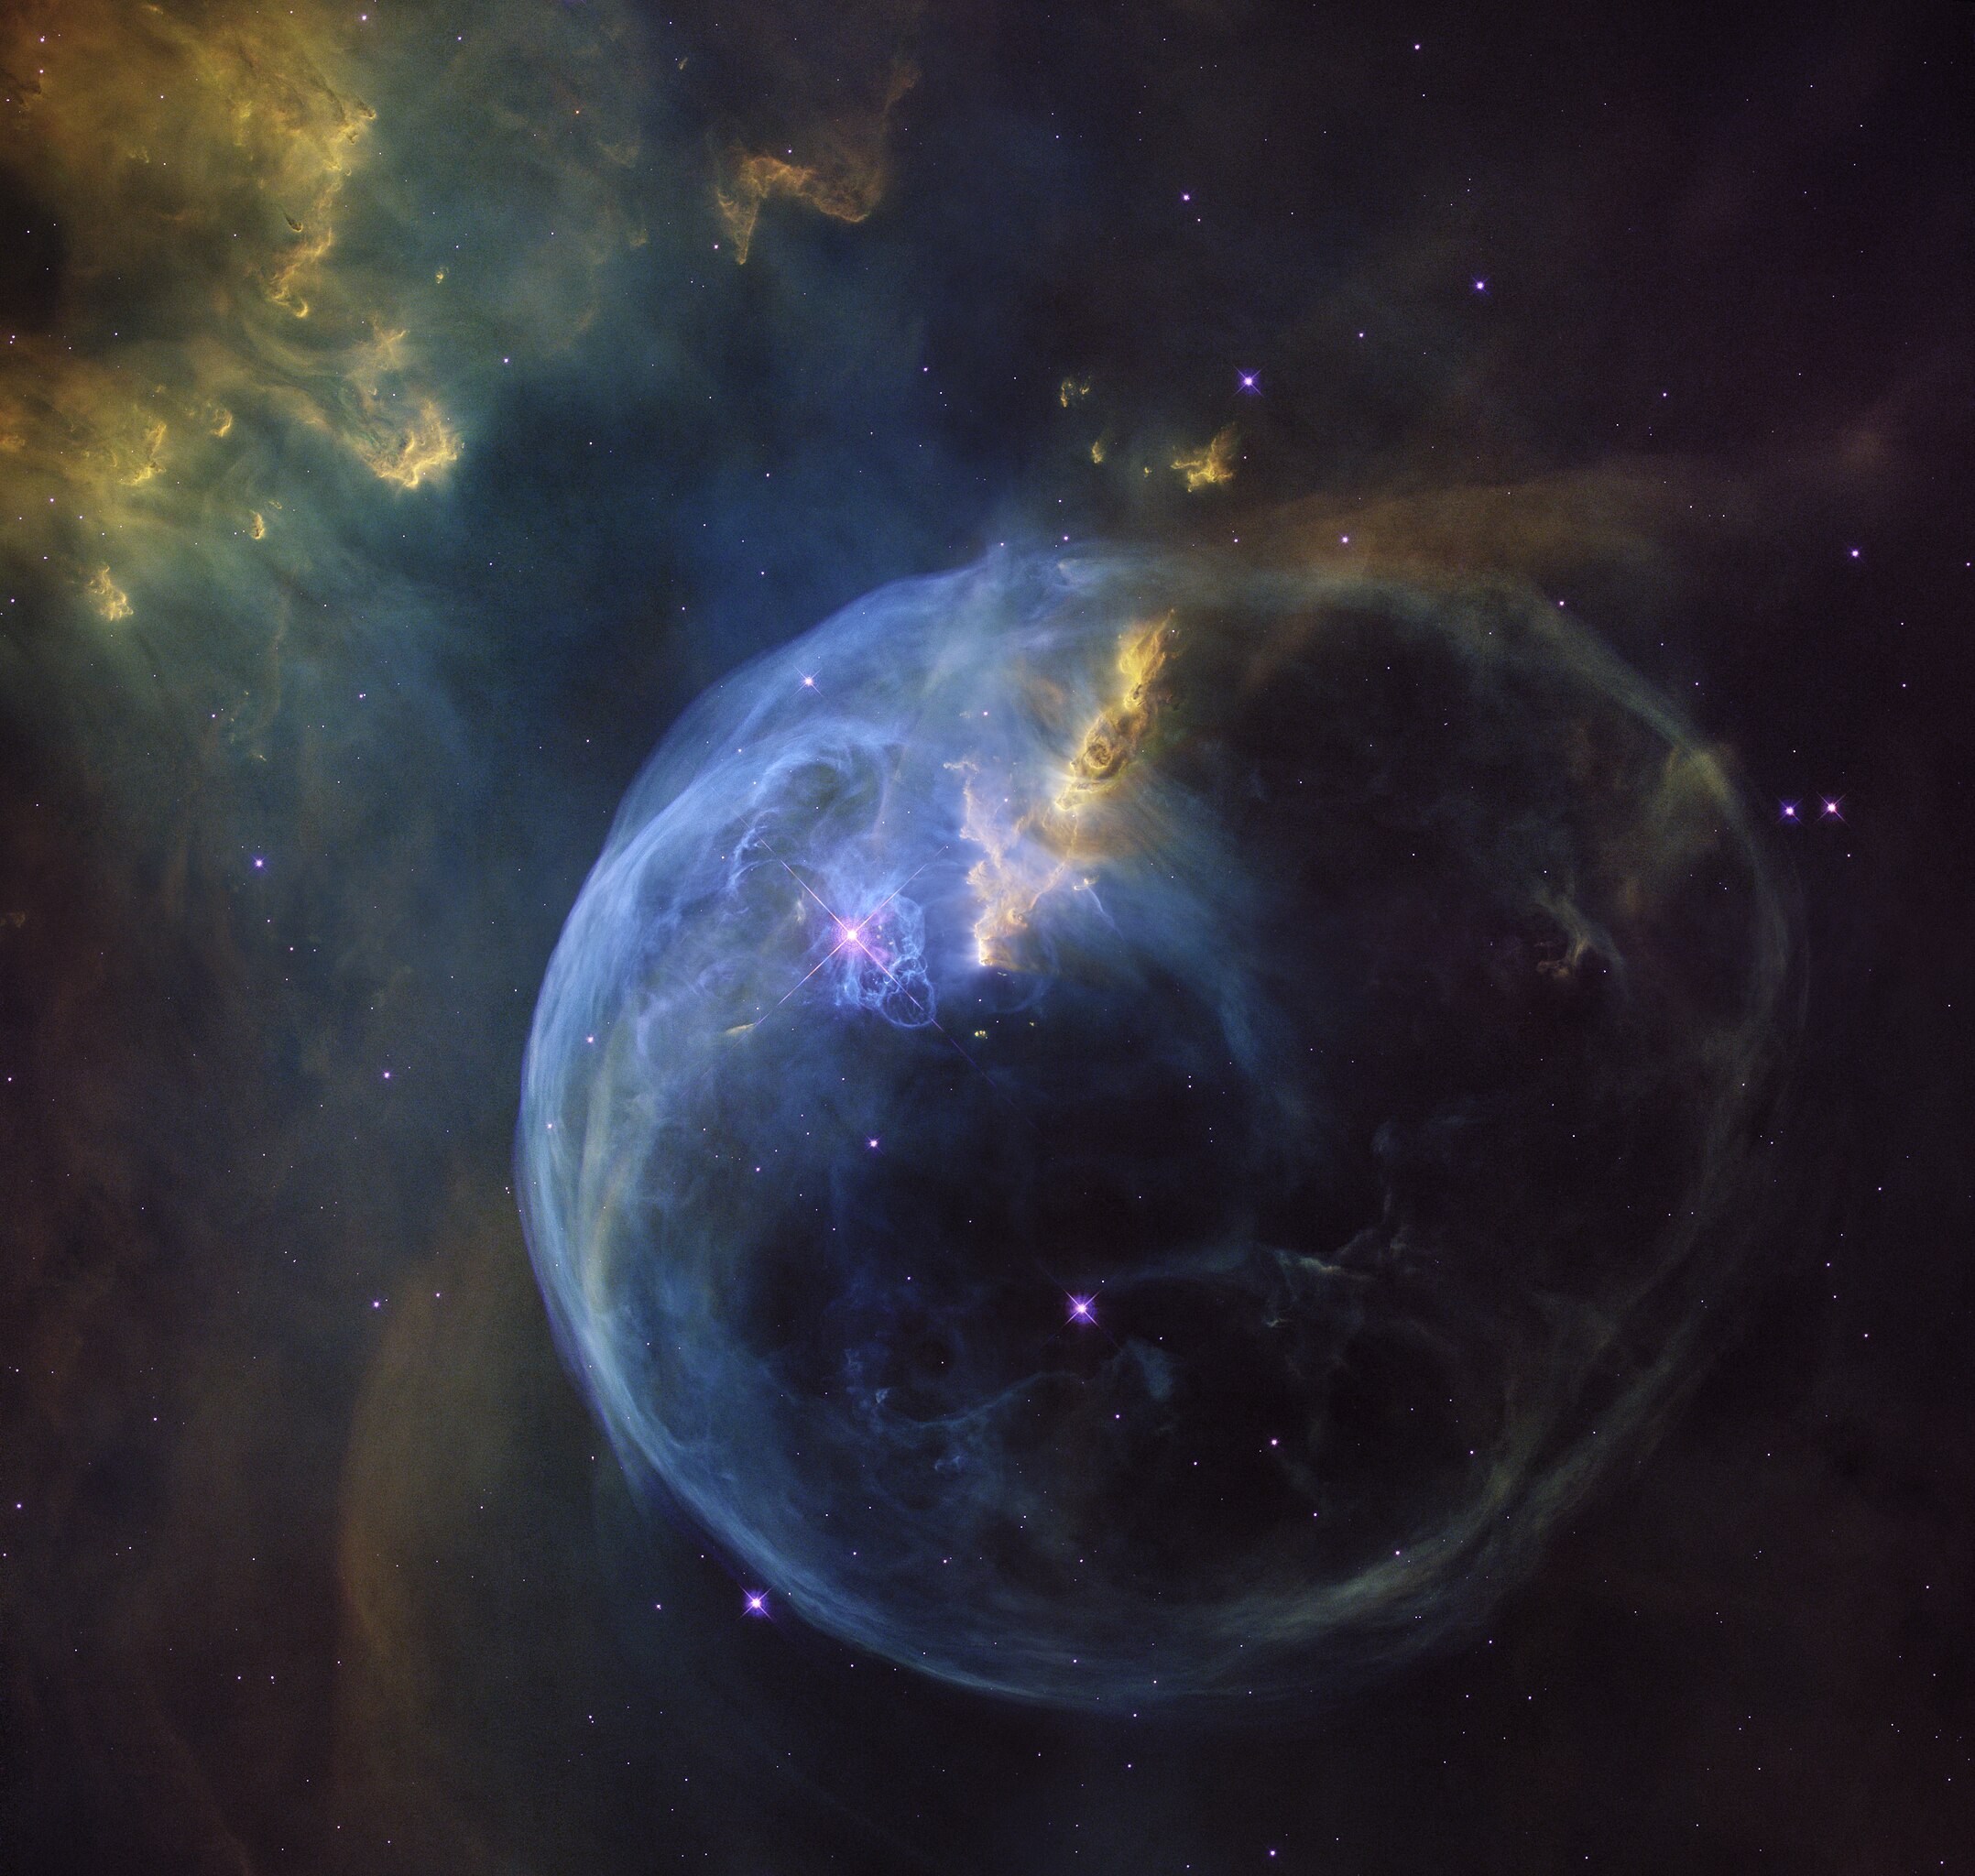 Туманность Пузырь — голубая сфера размером около десяти световых лет в созвездии Кассиопеи. Цвет ей придает ионизированный водород, из которого она в основном состоит